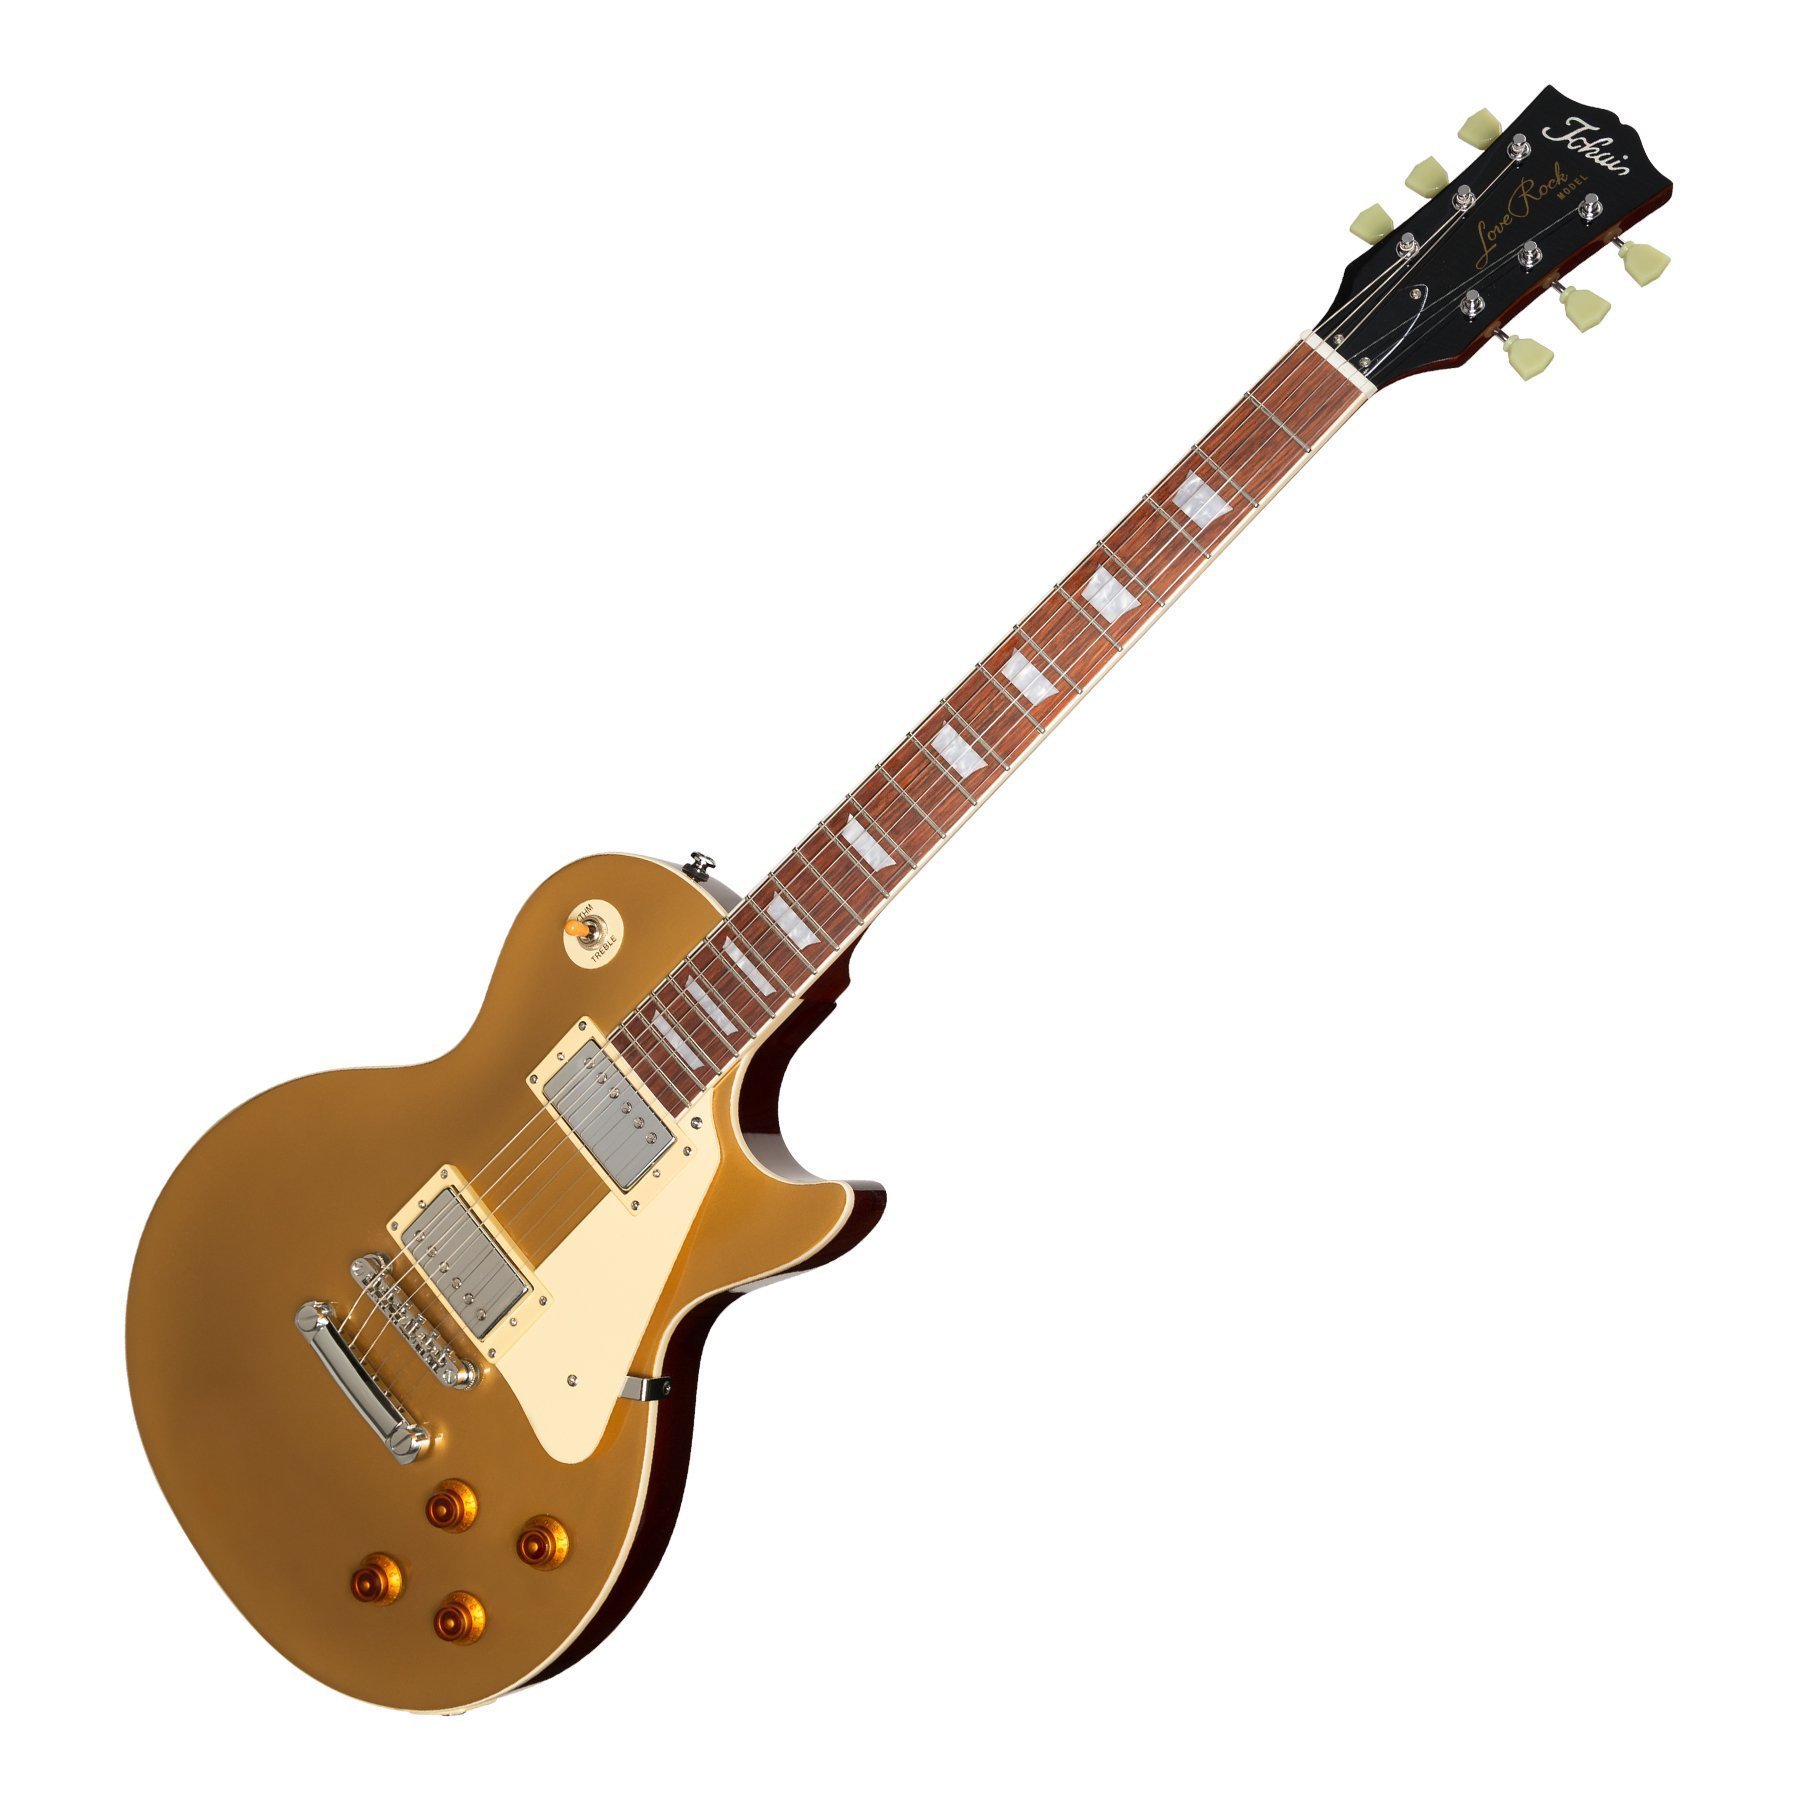 Đàn Guitar Điện Tokai - Tokai 'Traditional Series' ALS-62 LP-Style Electric Guitar (Gold Top) - Hàng chính hãng